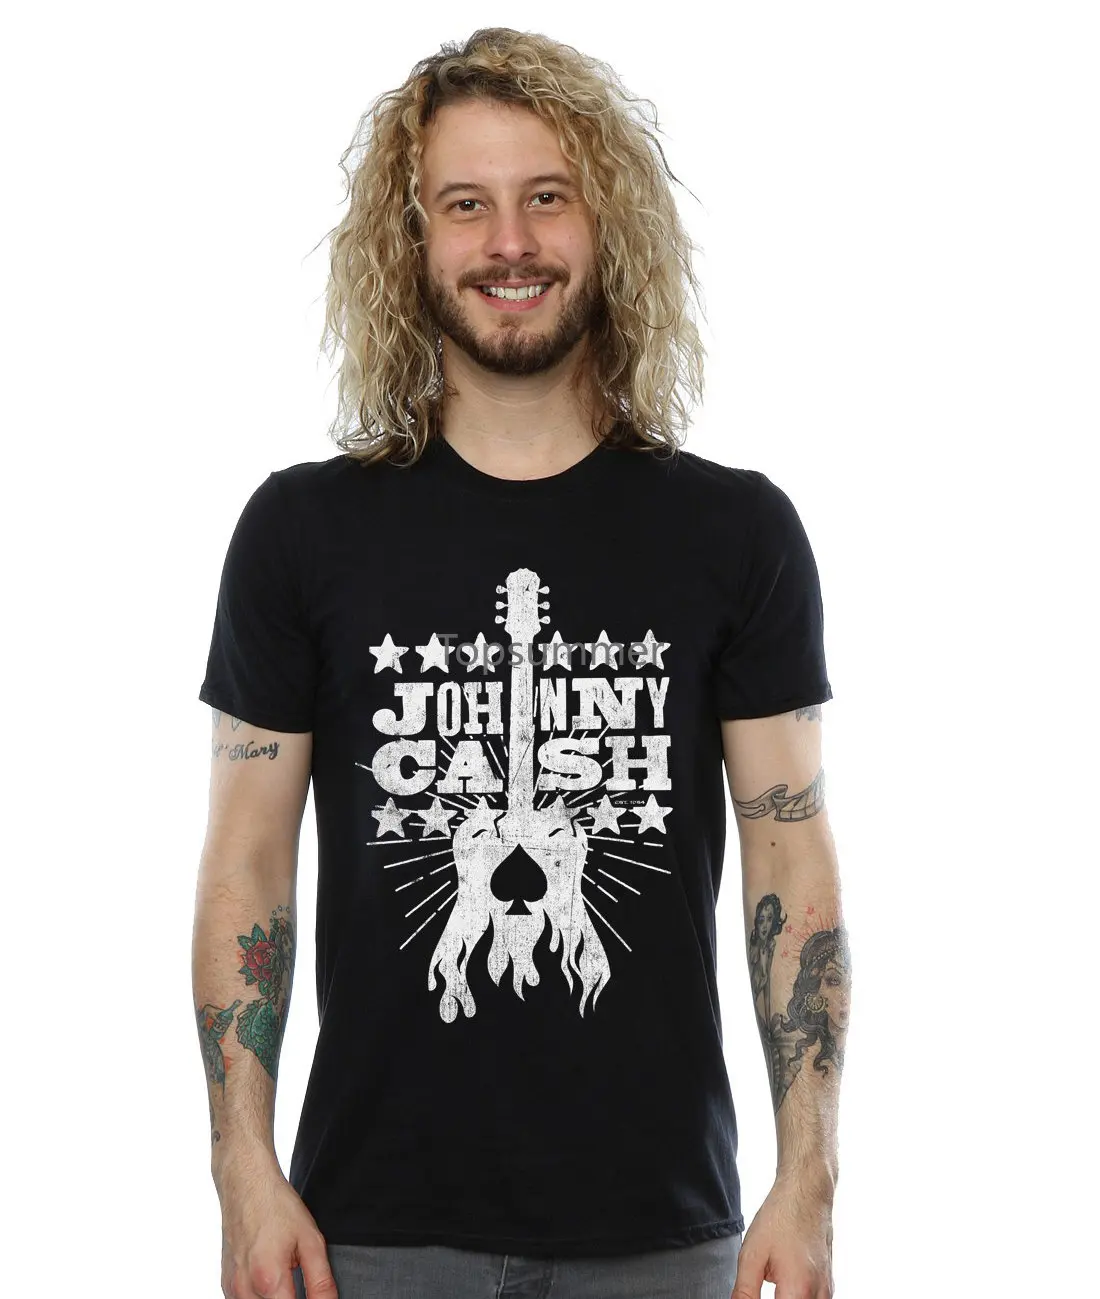 Мужская футболка с логотипом Johnny Cash с гравировкой на дереве, Новое поступление, мужские футболки, повседневные футболки для мальчиков, топы Со скидками